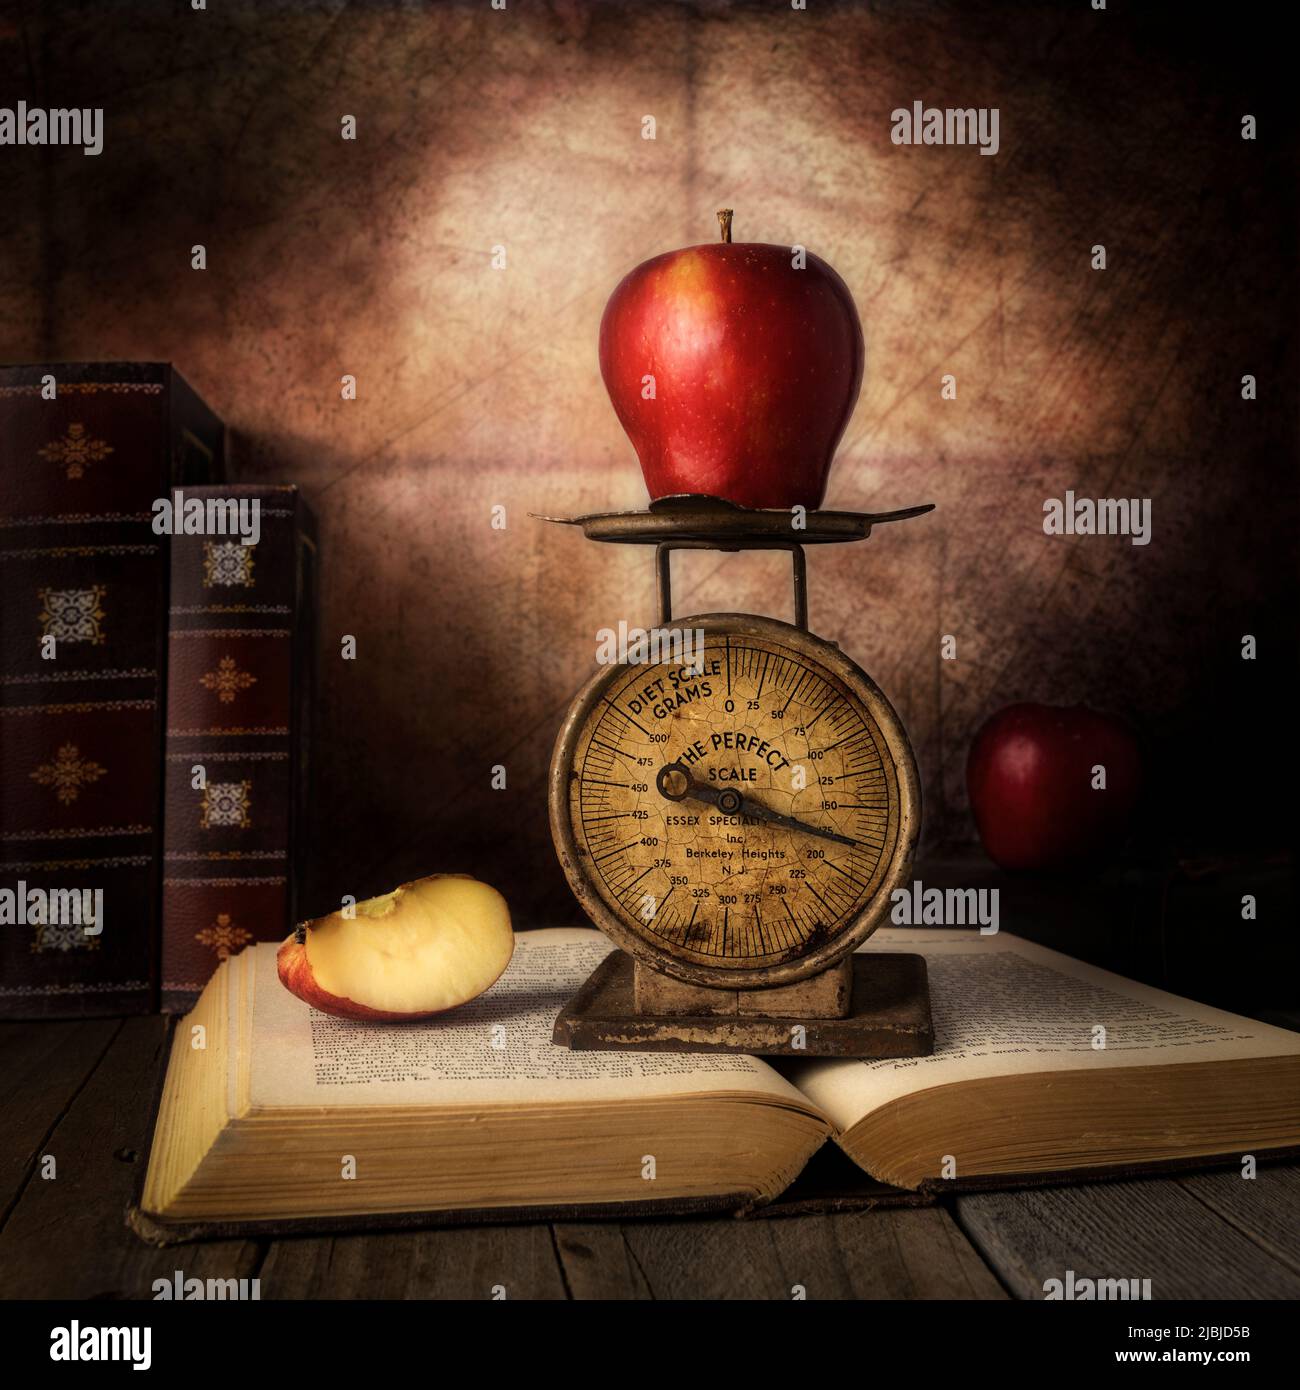 Roter Apfel mit vintage kleinen Maßstab auf der Spitze der antiken offenen Buch Stillleben Fotografie Stockfoto